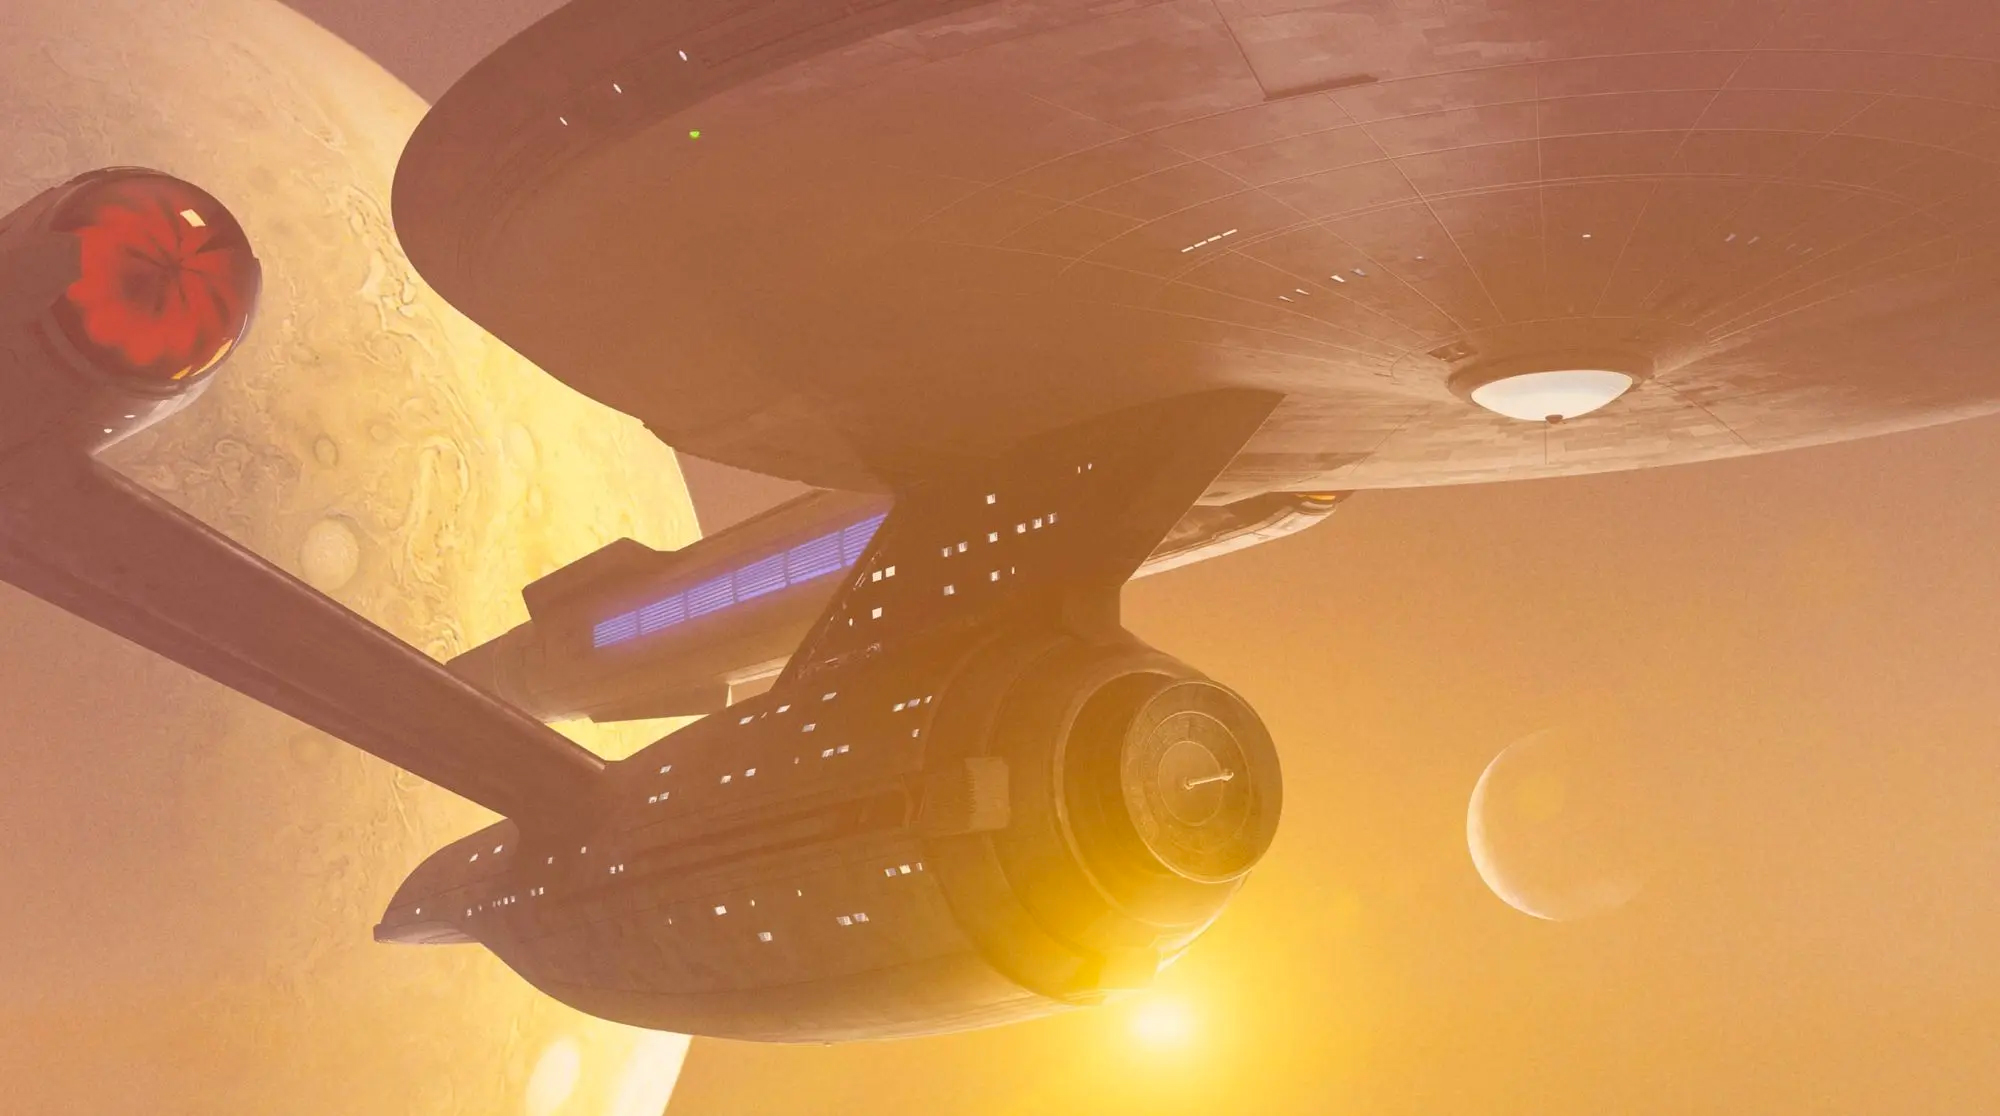 star trek history of the enterprise